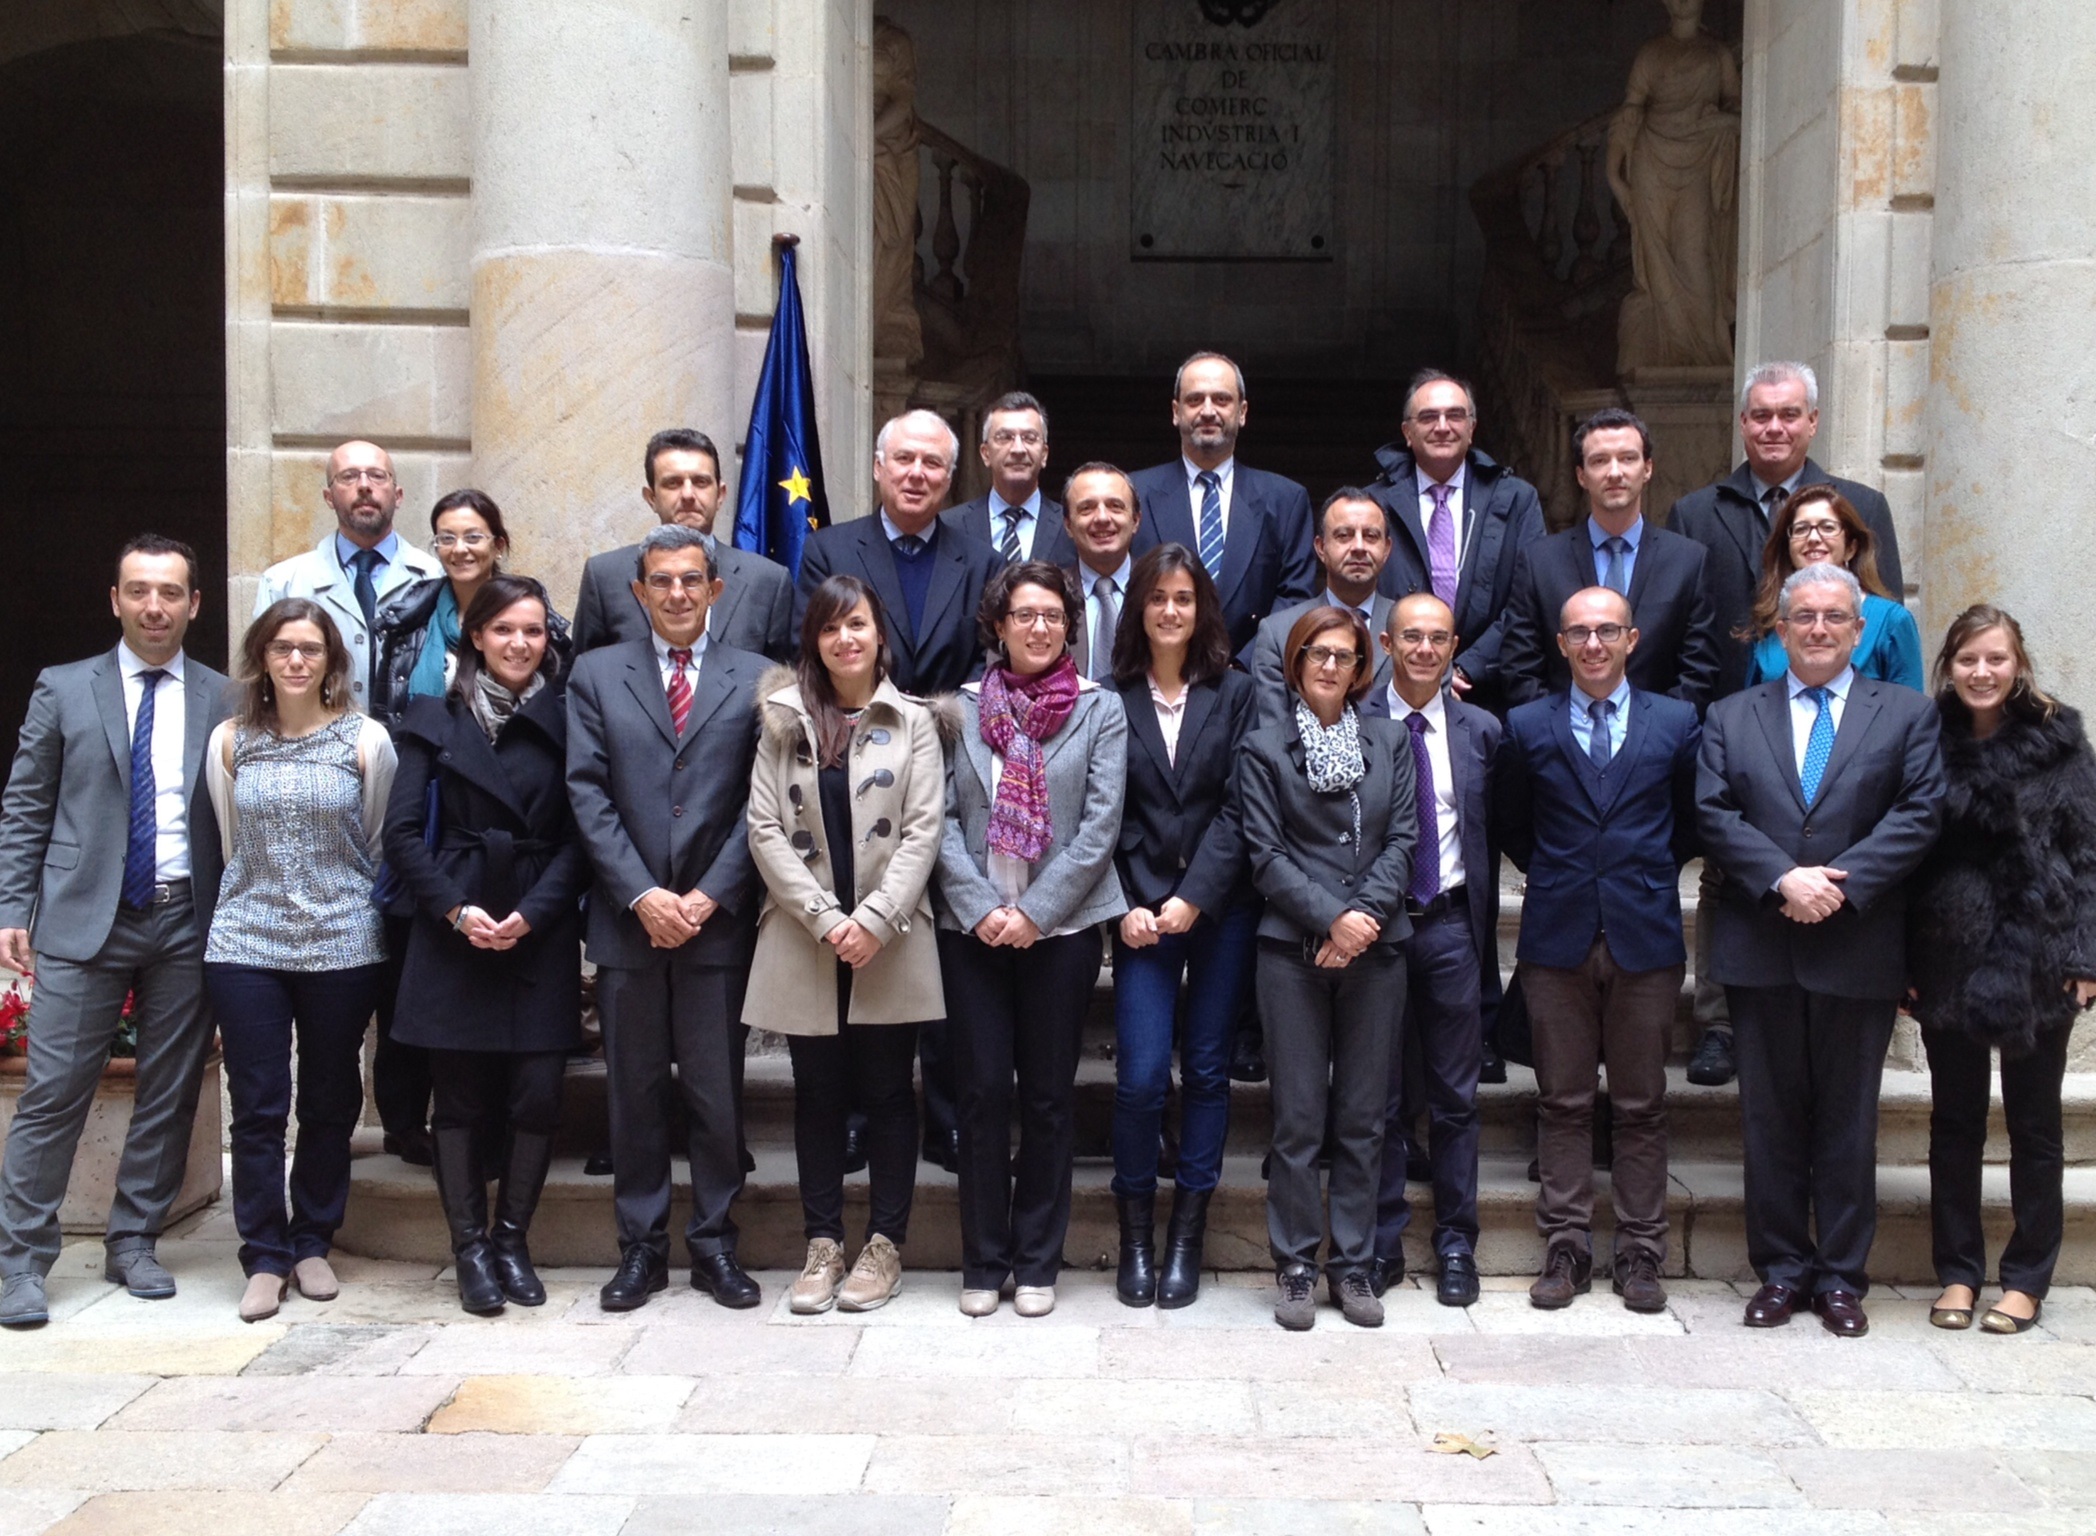 OPTIMED Steering Committee Meeting in Barcelona